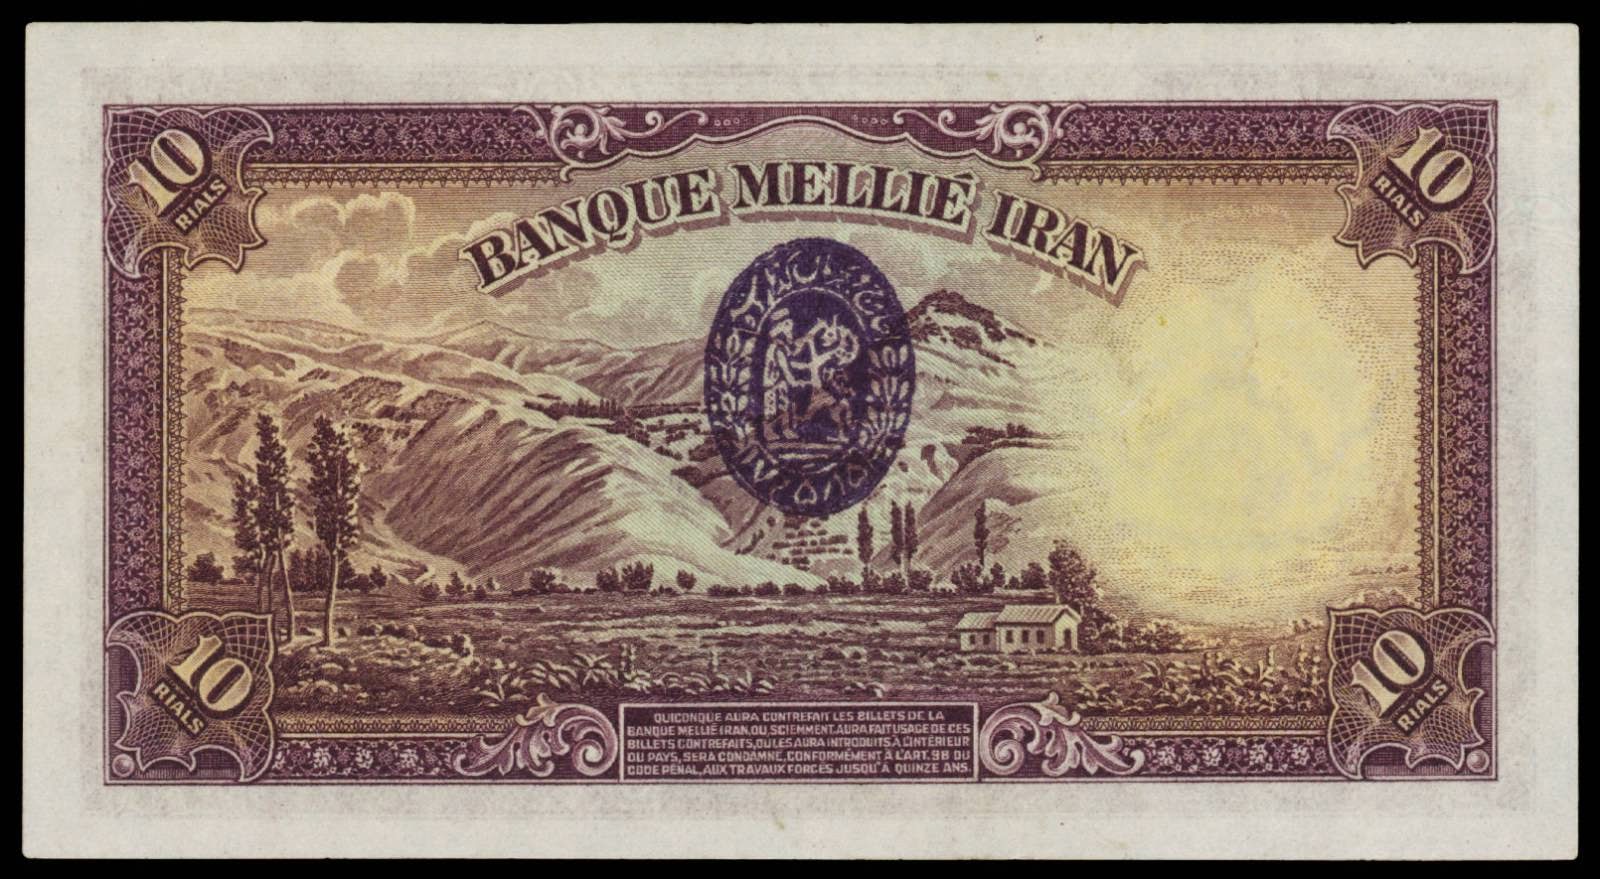 Iran money 10 Rials banknote 1938 Alborz mountains